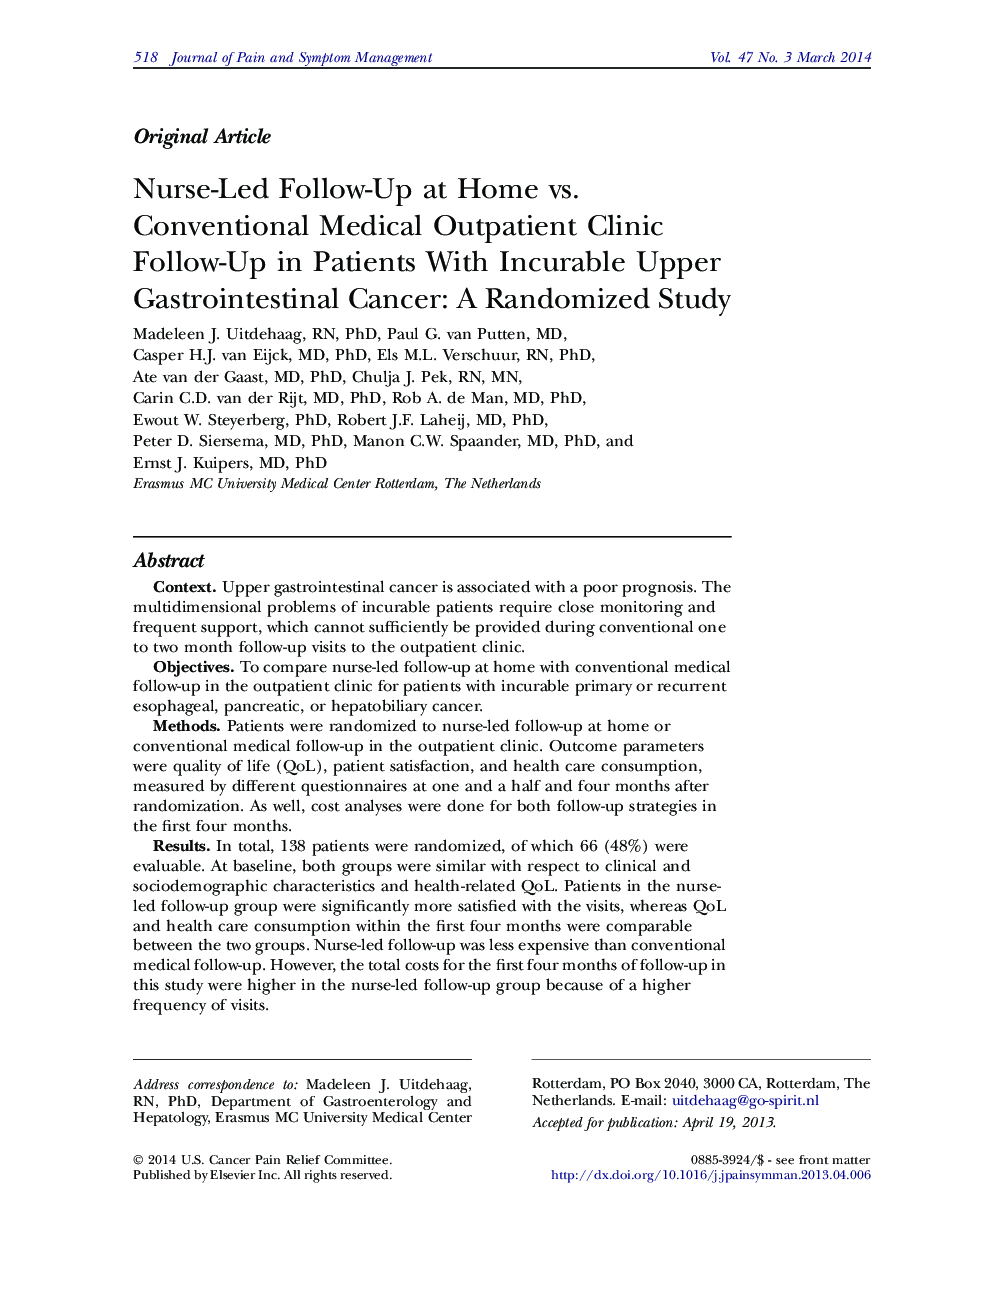 پیگیری پرستار در بیماران خانگی و پیگیری بیمارستان های معمولی پزشکی در بیماران مبتلا به سرطان معده بالای سرطانی قابل پیشگیری: یک مطالعه تصادفی 